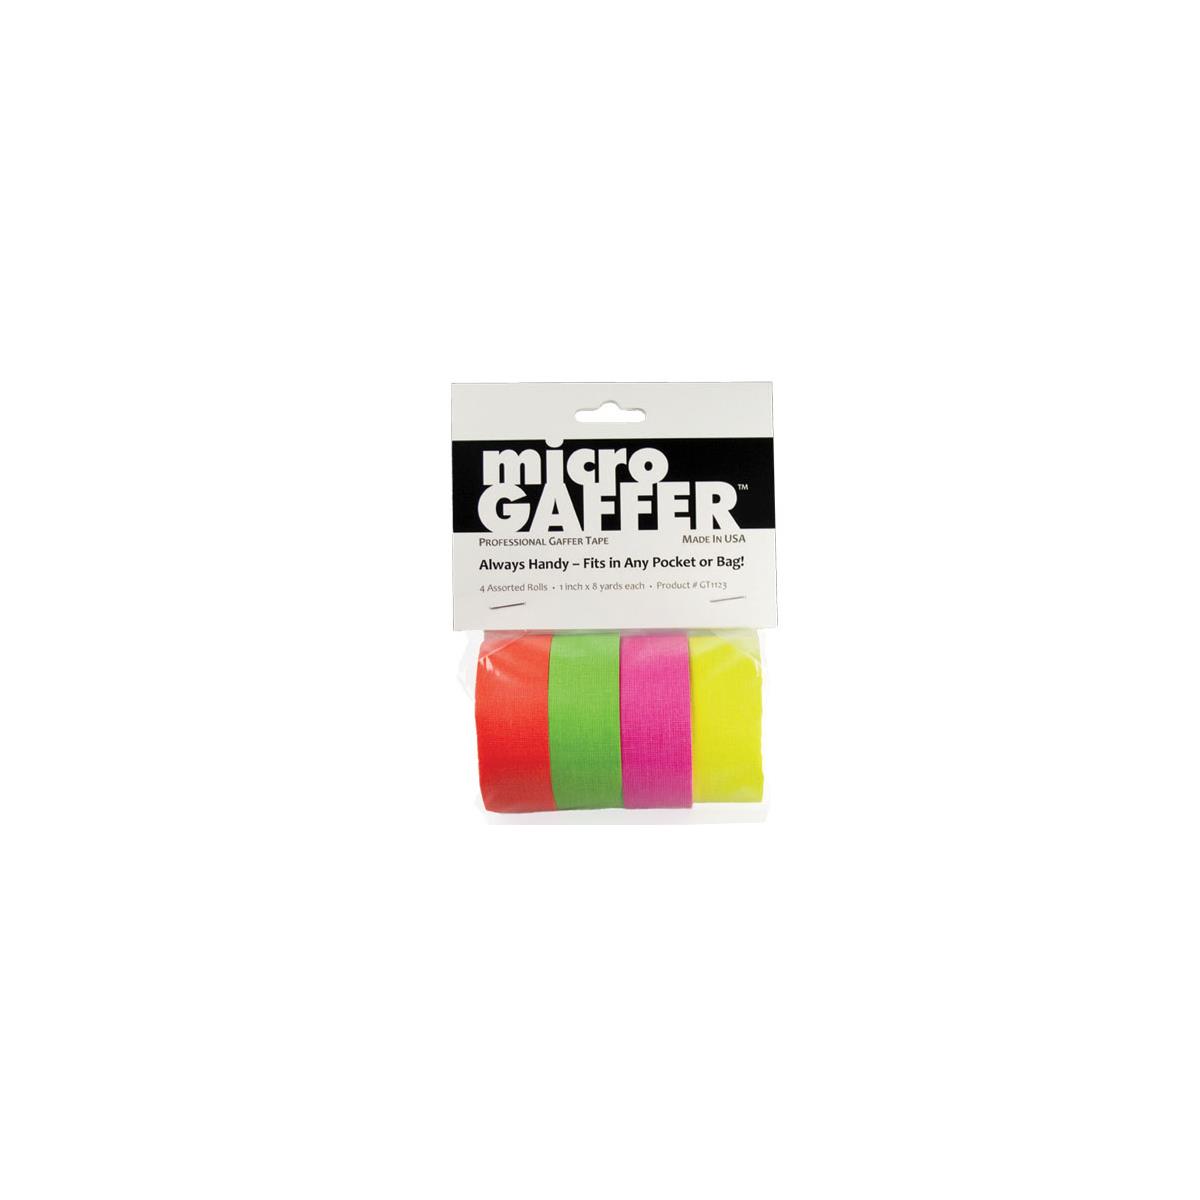 Лента Adorama microGAFFER, 8 ярдов x 1 дюйм, 4 упаковки флуоресцентных цветов #GT4567